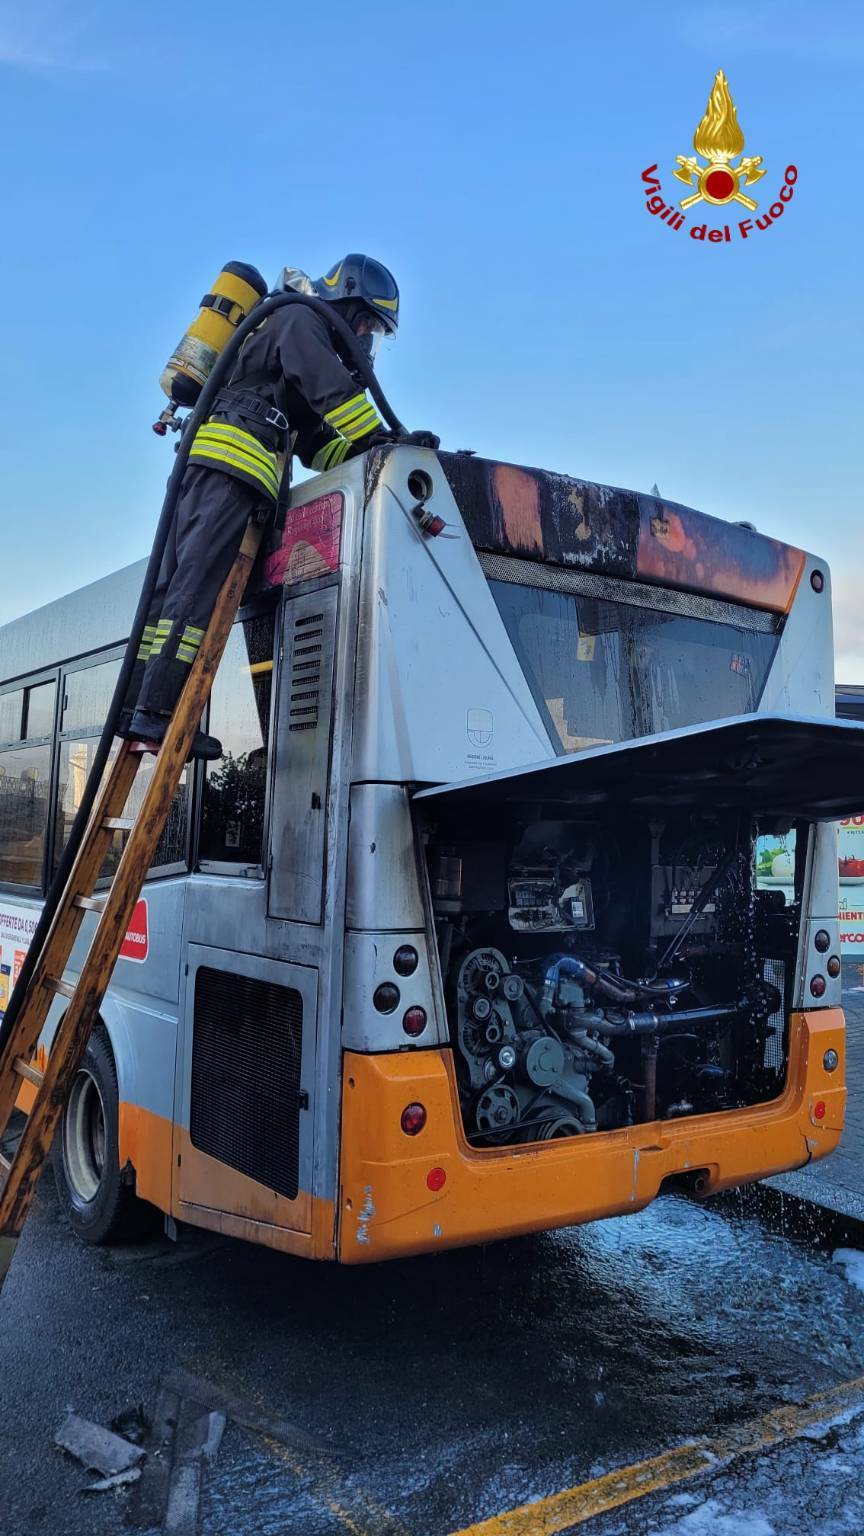 autobus in fiamme a Oregina